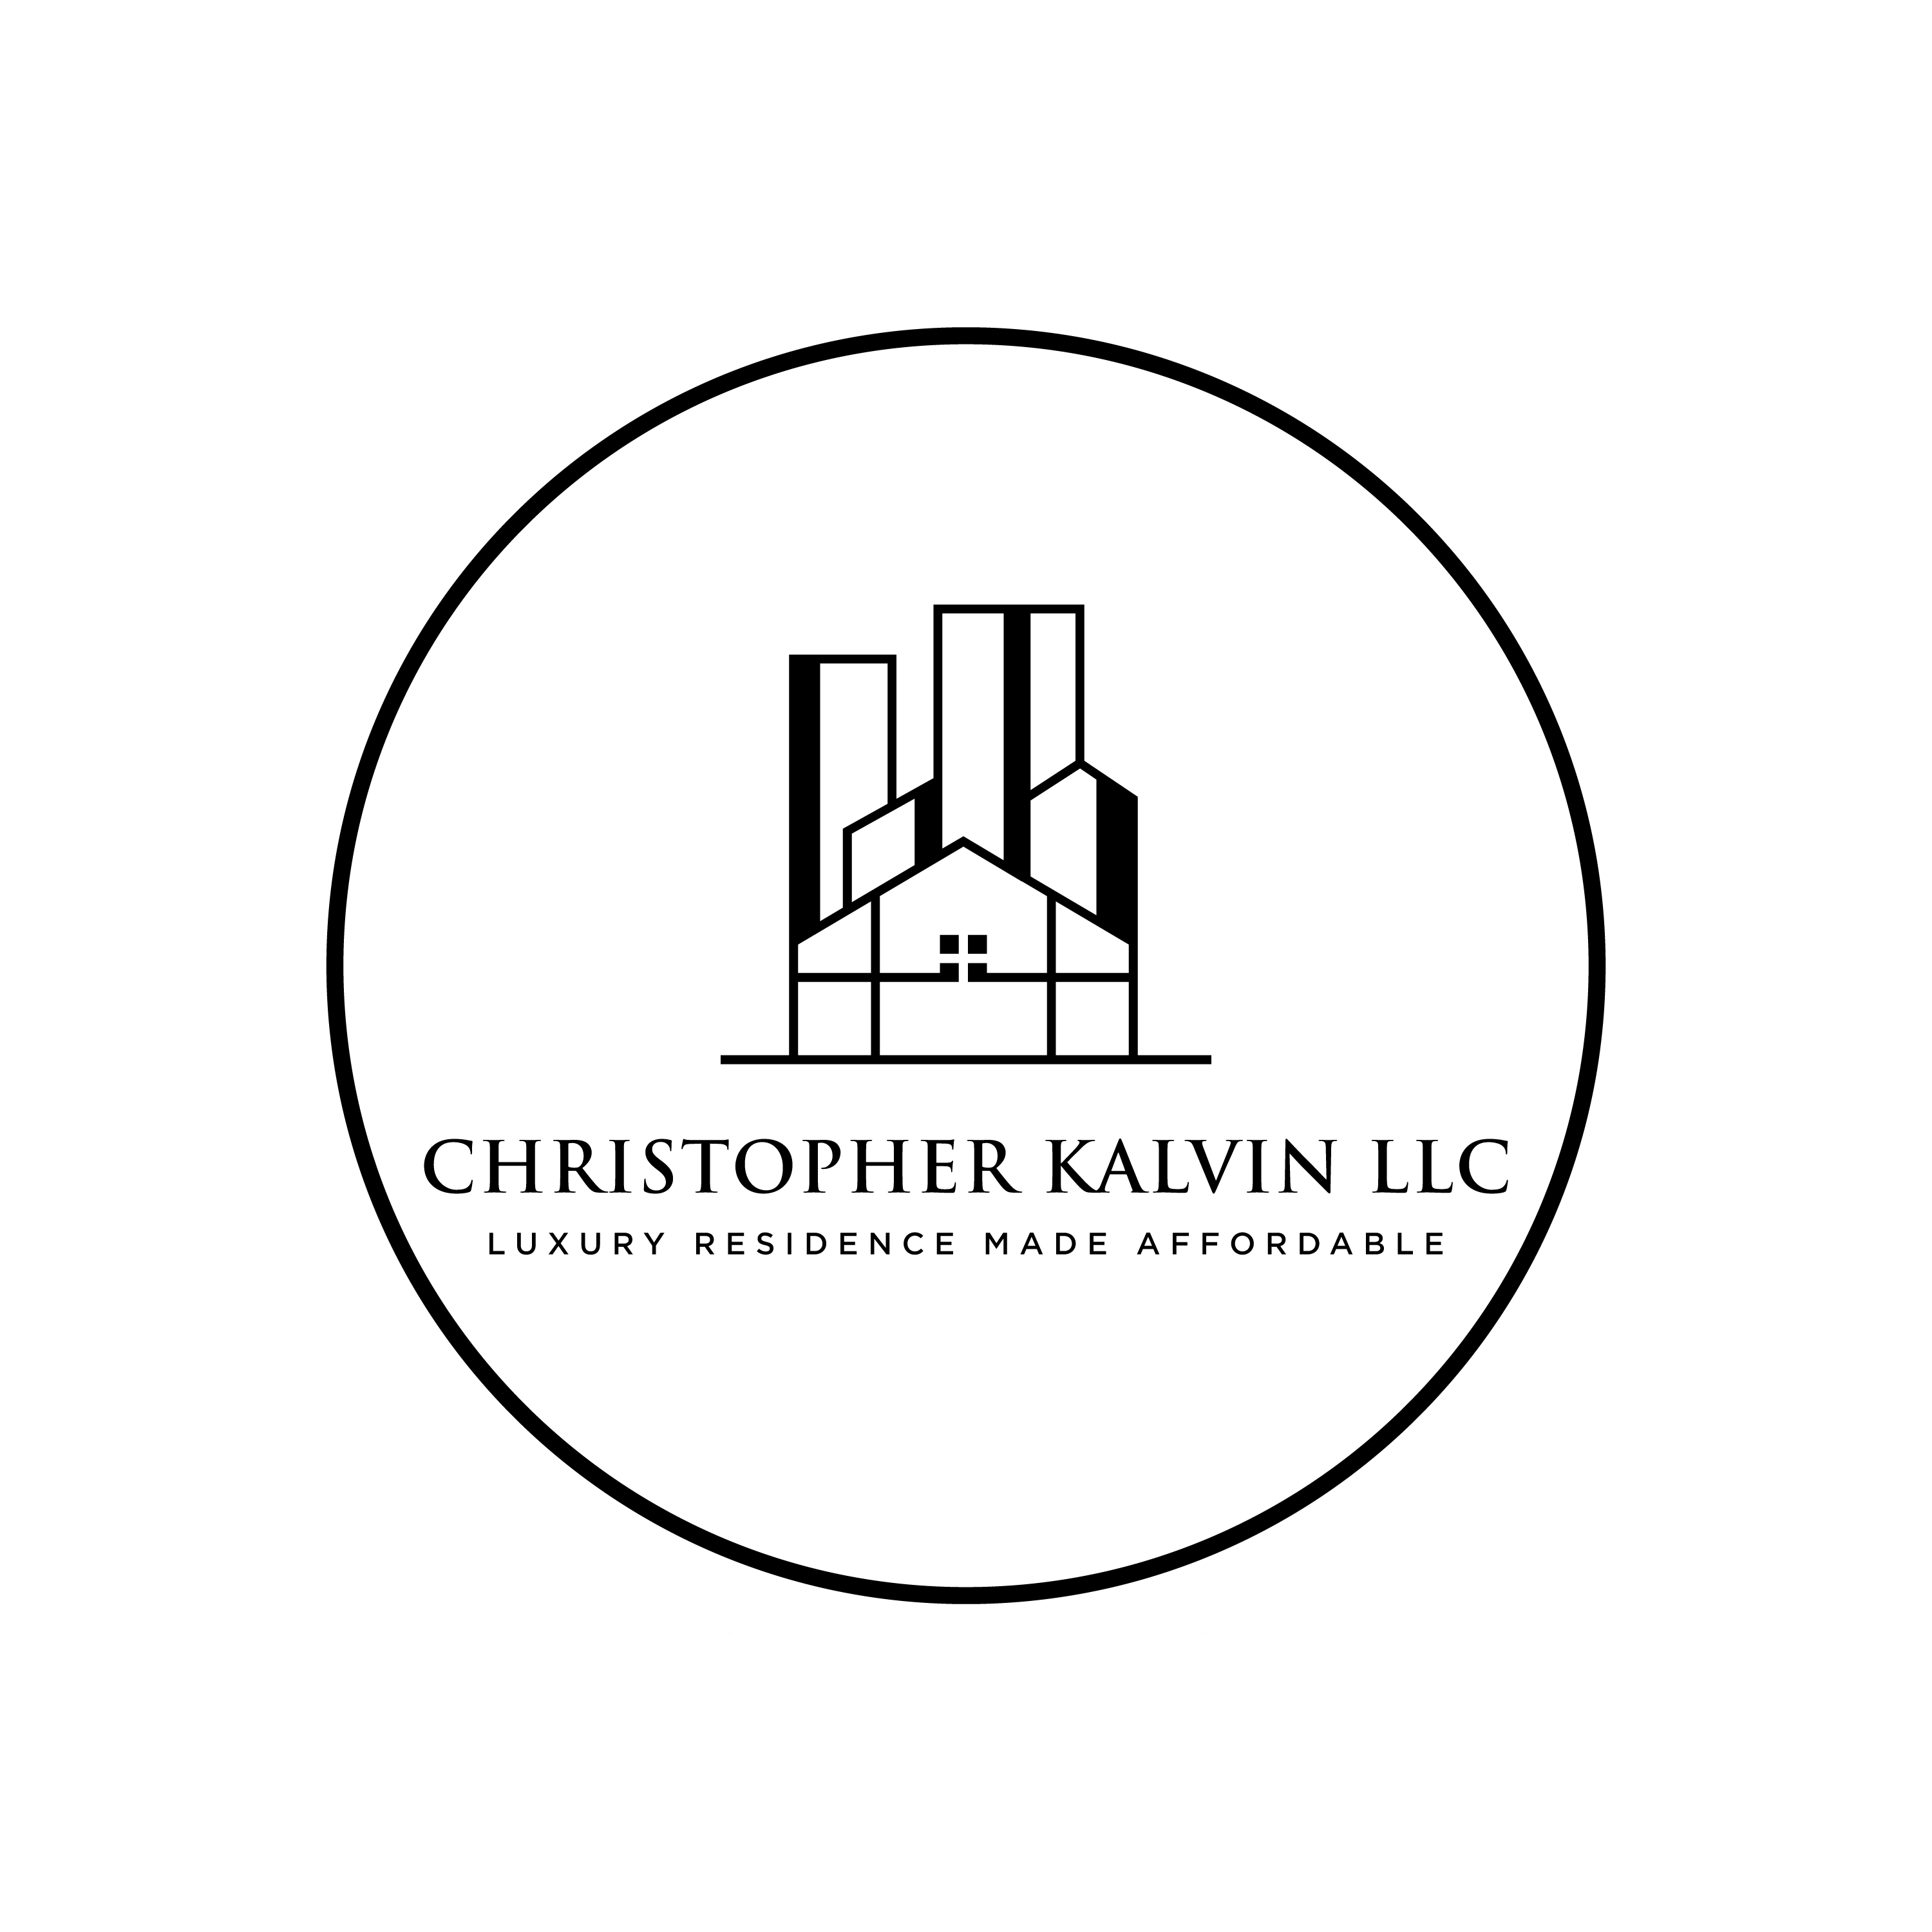 Christopher Kalvin LLC